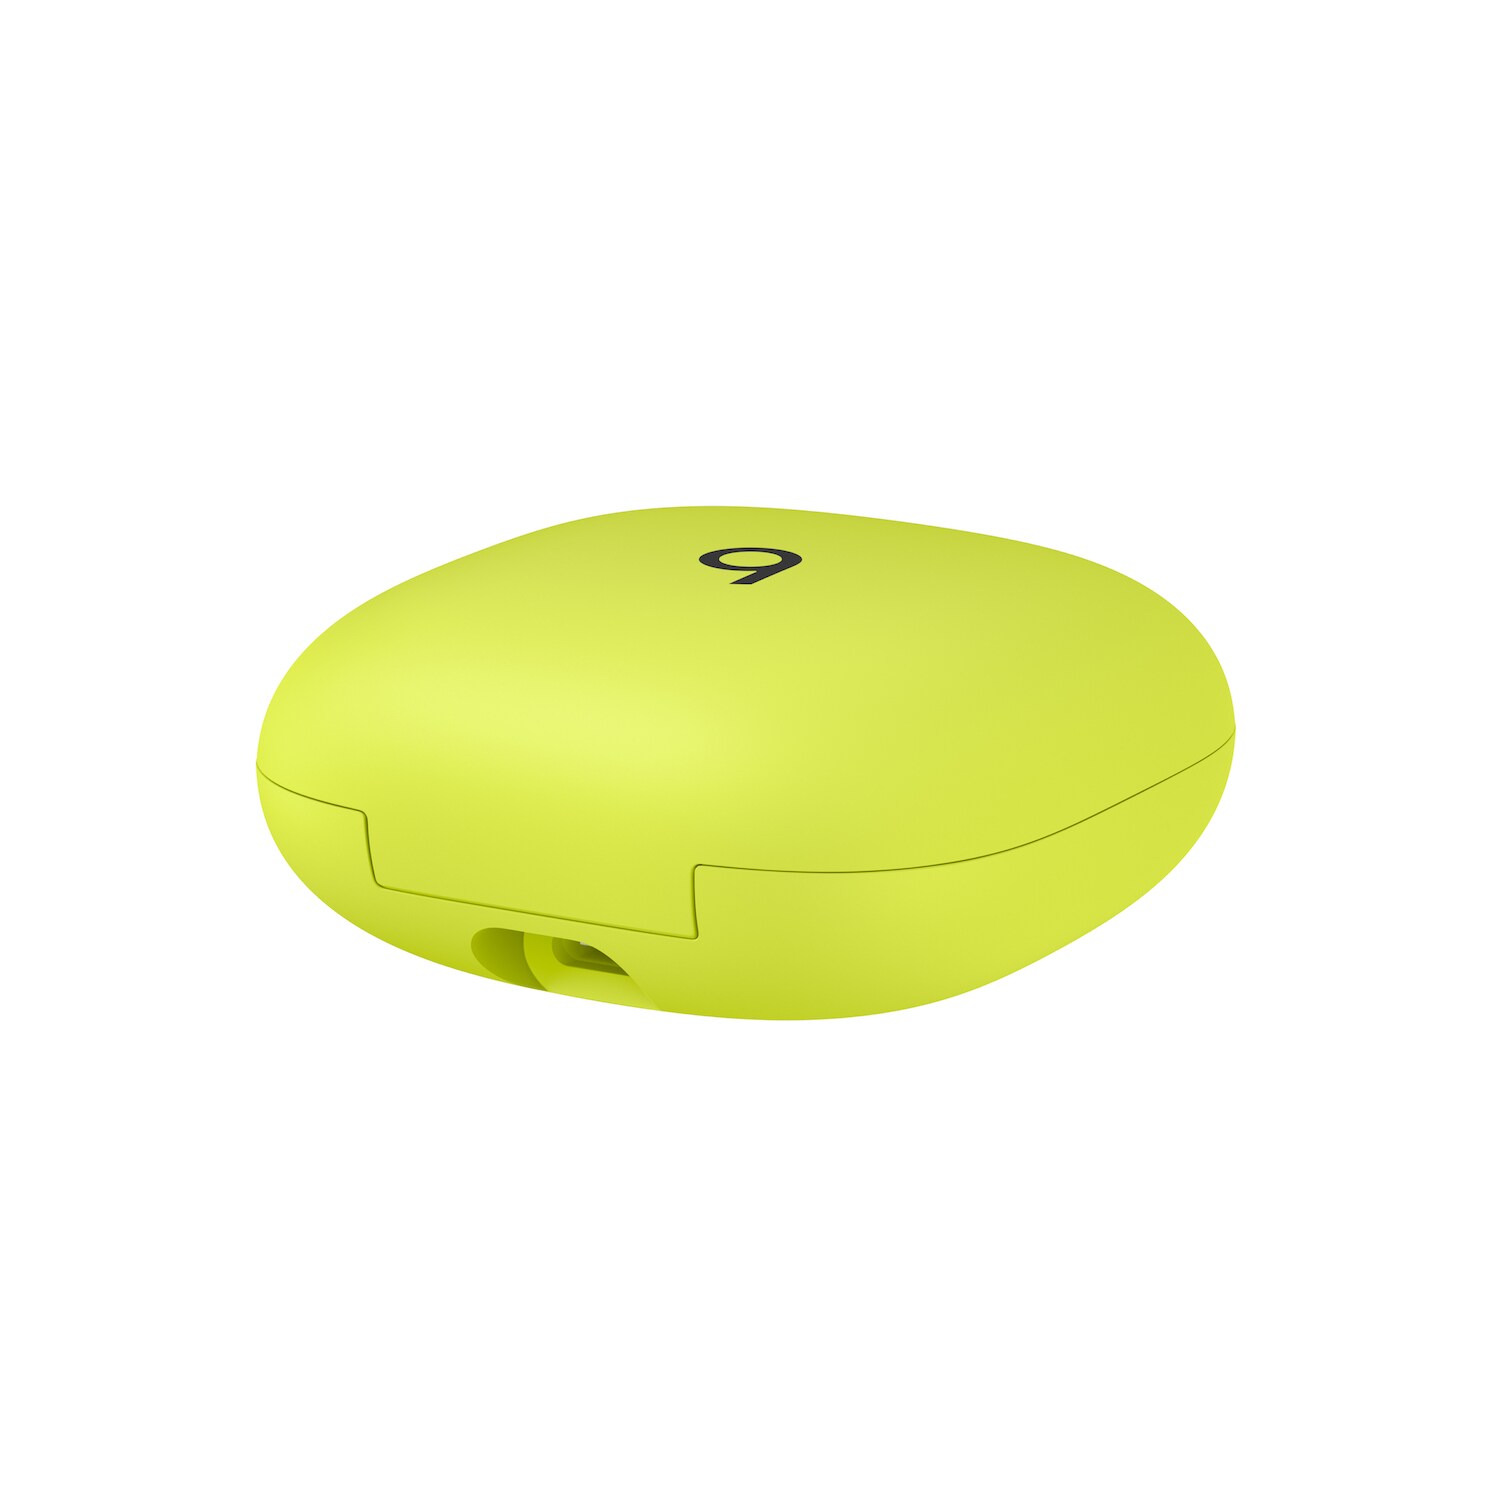 In-Ear True Wireless Earbuds Yellow Pro Kopfhörer Beats Volt Fit Cyberport ++